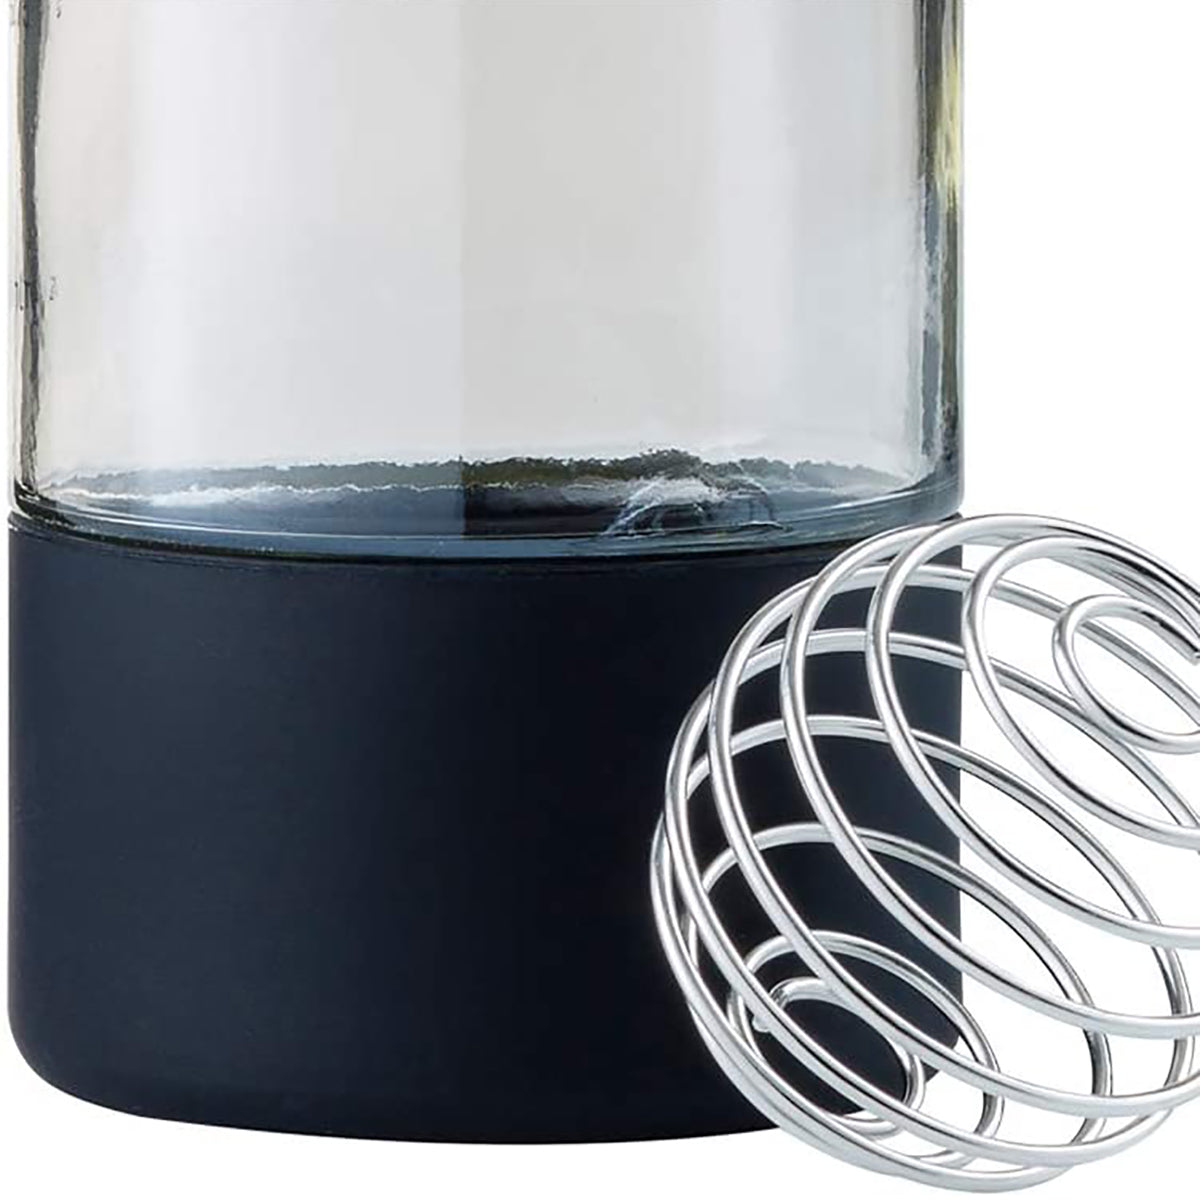 Blender Bottle Mantra 20 oz. Glass Shaker Mixer Cup with Loop Top Blender Bottle